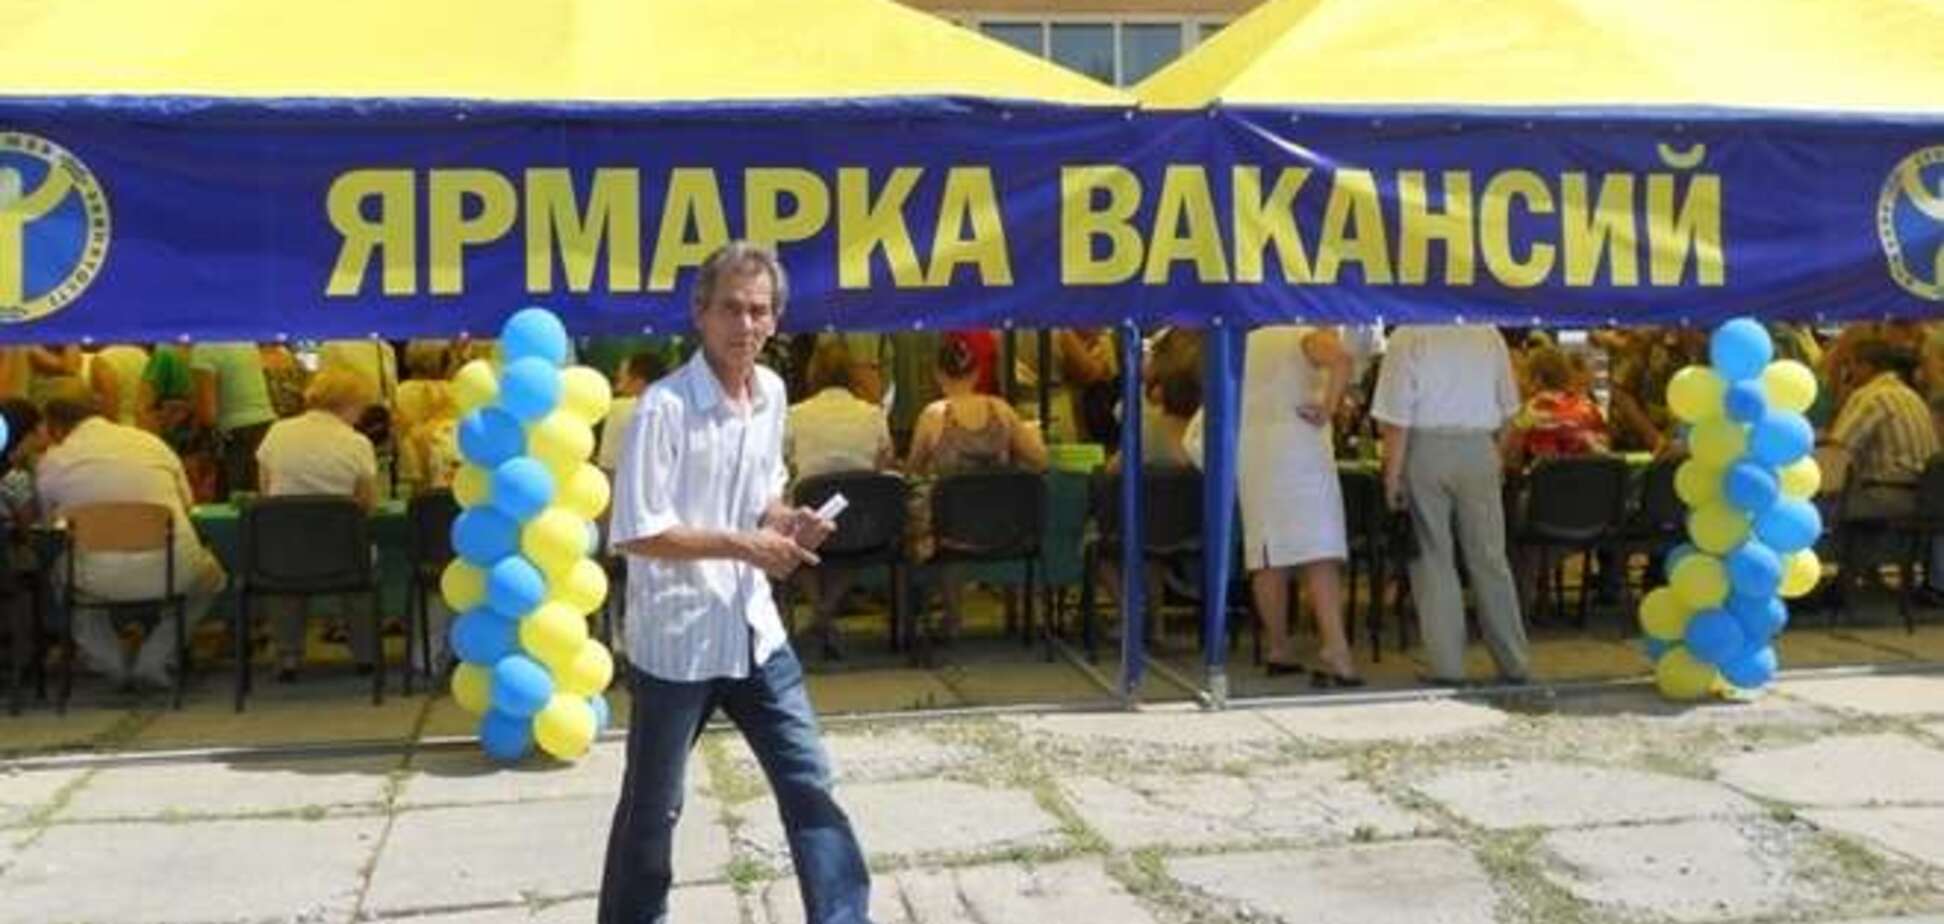 У Донецьку з'явилися екзотичні вакансії: потрібно навіть розробник аватарів